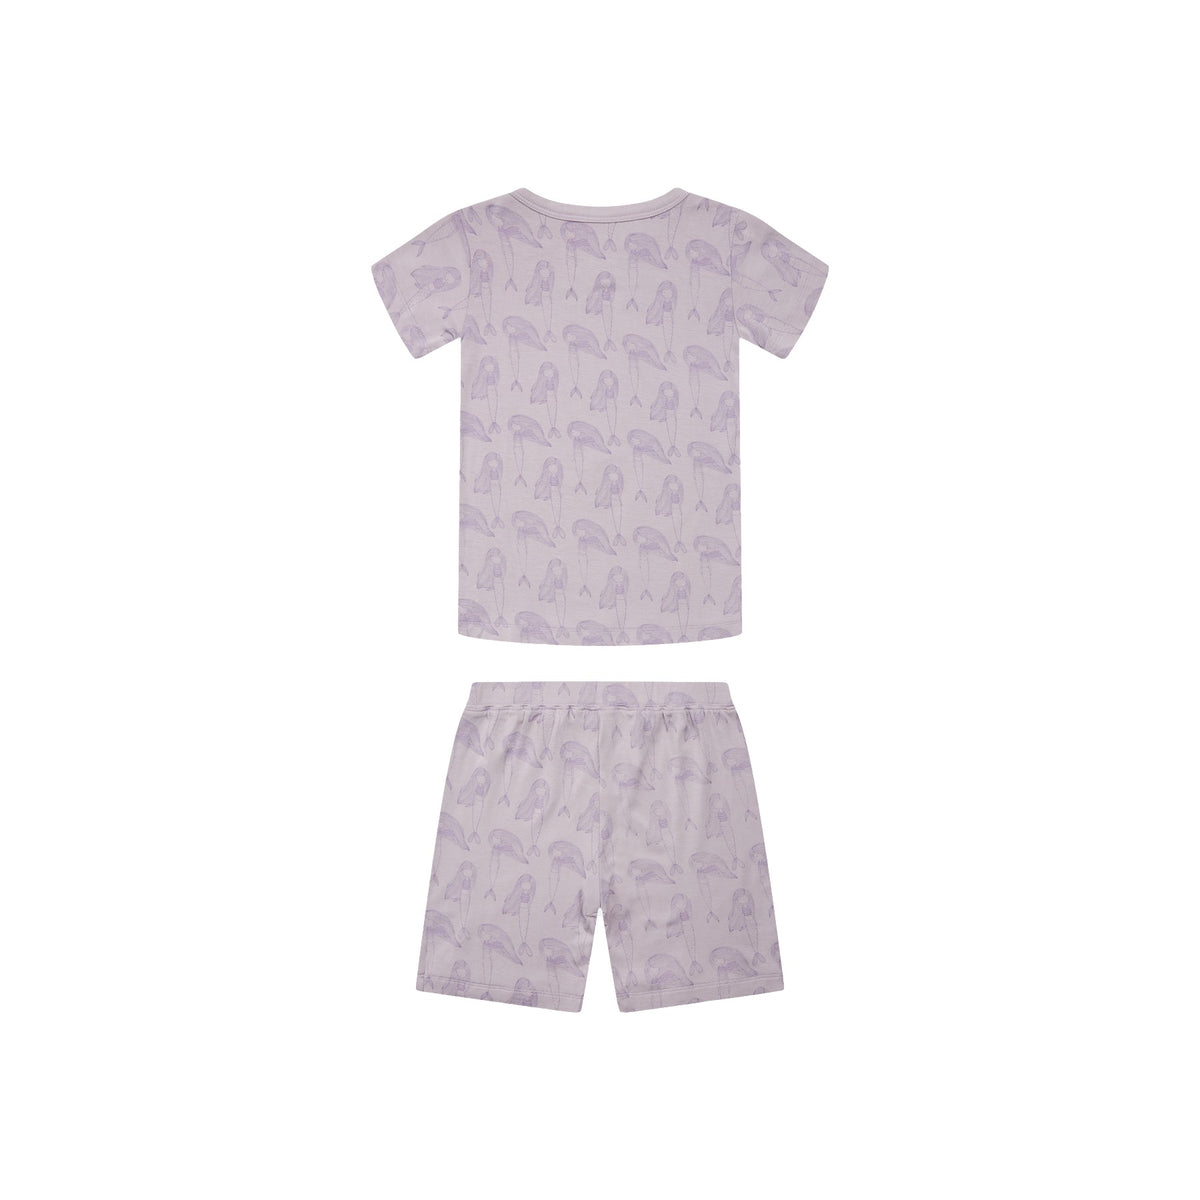 Ein toller, weicher Pyjama für den Sommer. Die Bambusfaser ist angenehm kühlend auf der Haut. Er besteht aus einem T-Shirt und einer kurzen Hose. Auf dem Pyjama befinden sich kleine Meerjungfrauen.